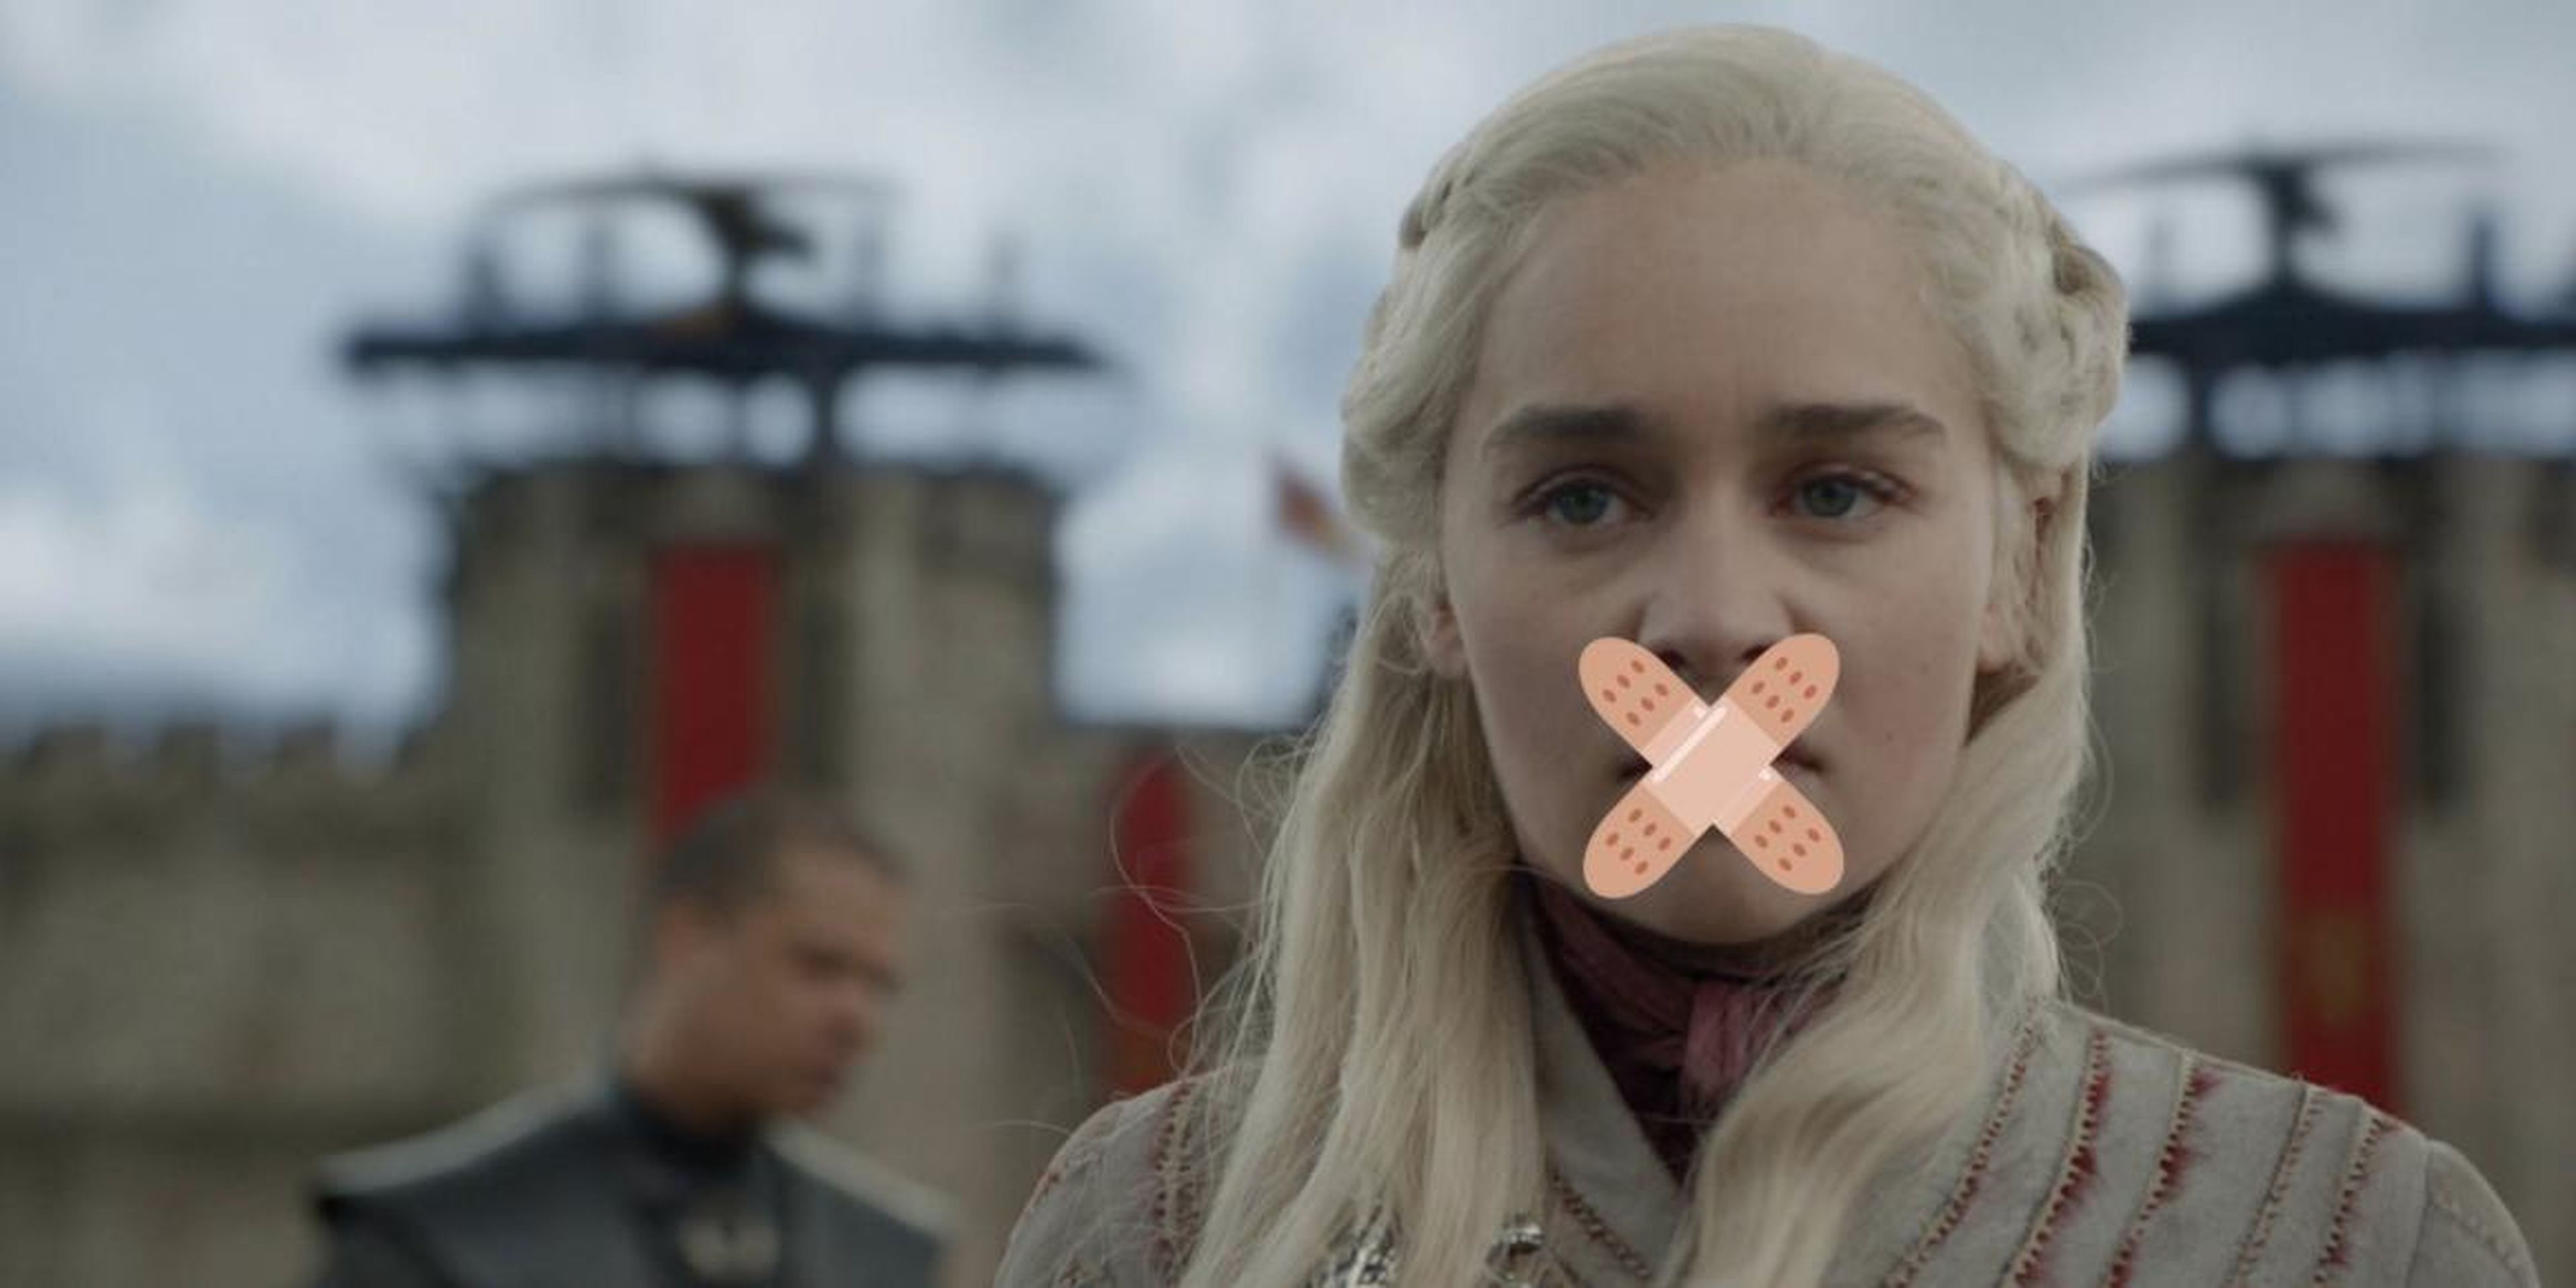 Una imagen editada que muestra a Daenerys Targaryen en la temporada 8 de "Juego de tronos", con tiritas emoji superpuestos en su rostro.